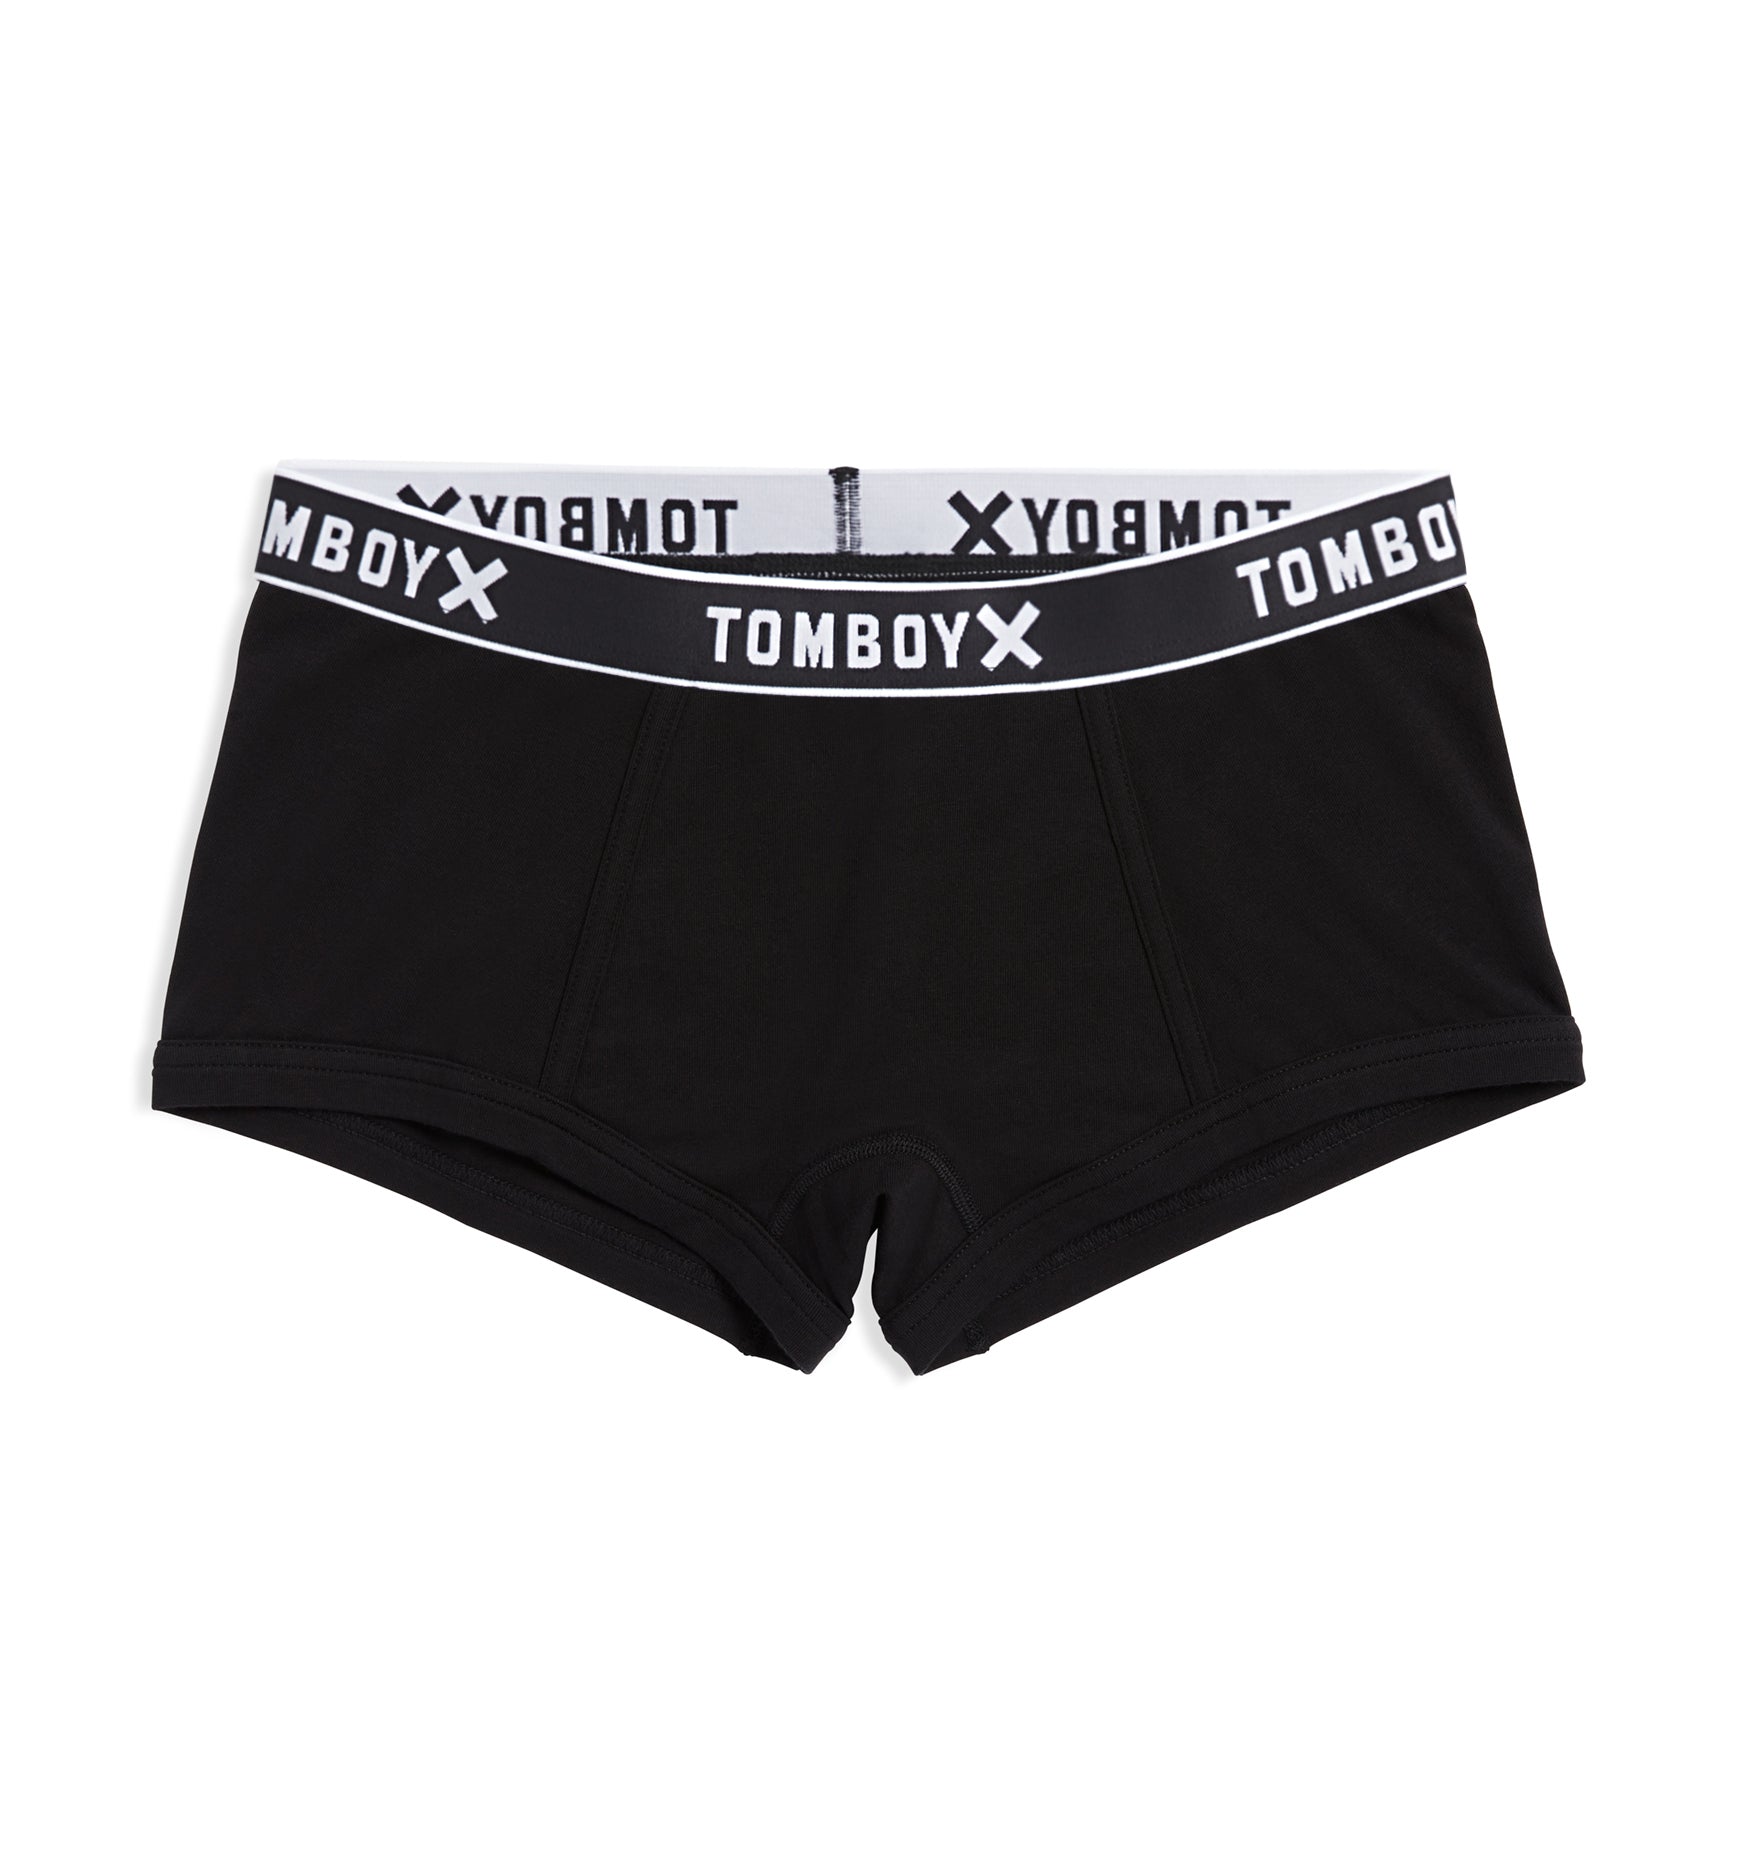 Tucking Boy Shorts - Bluestone – TomboyX